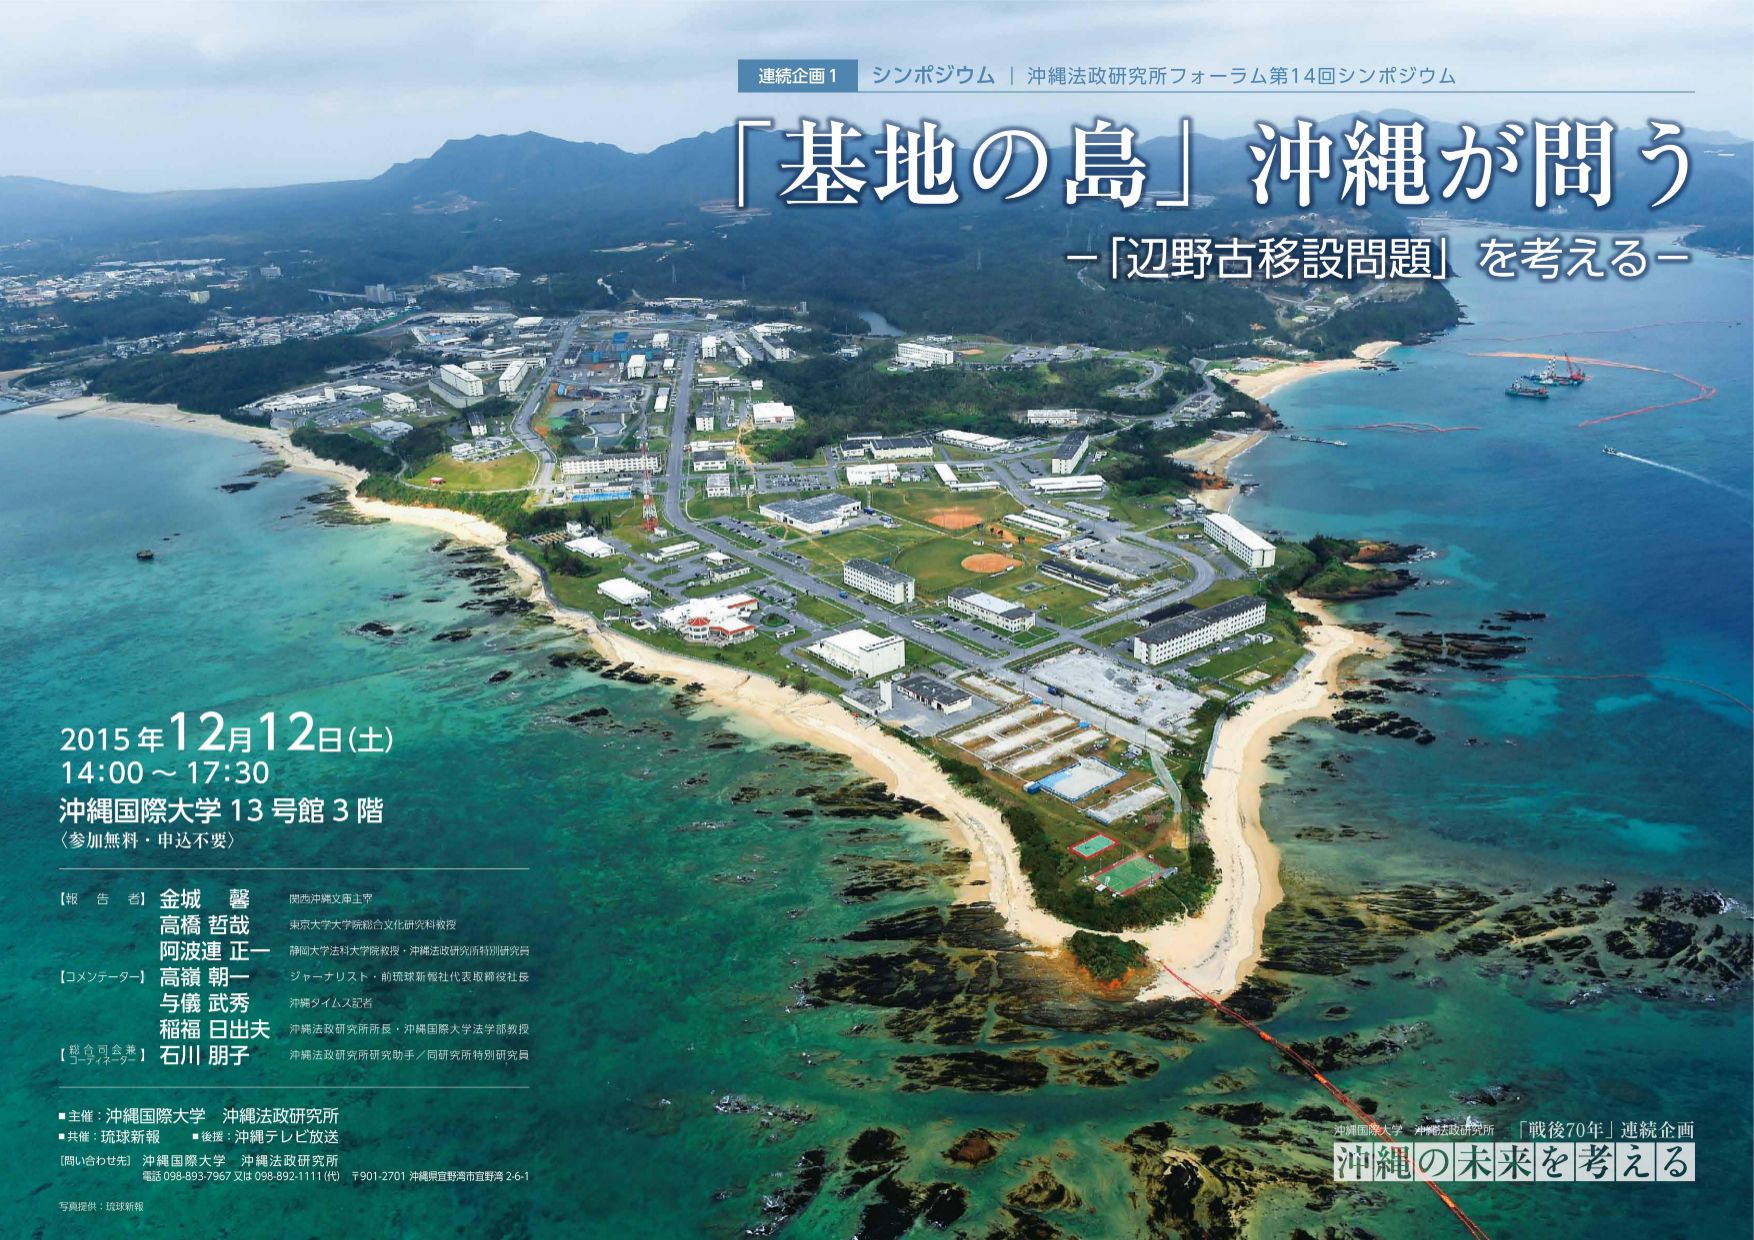 シンポジウム「基地の島」沖縄が問う―「辺野古移設問題」を考える